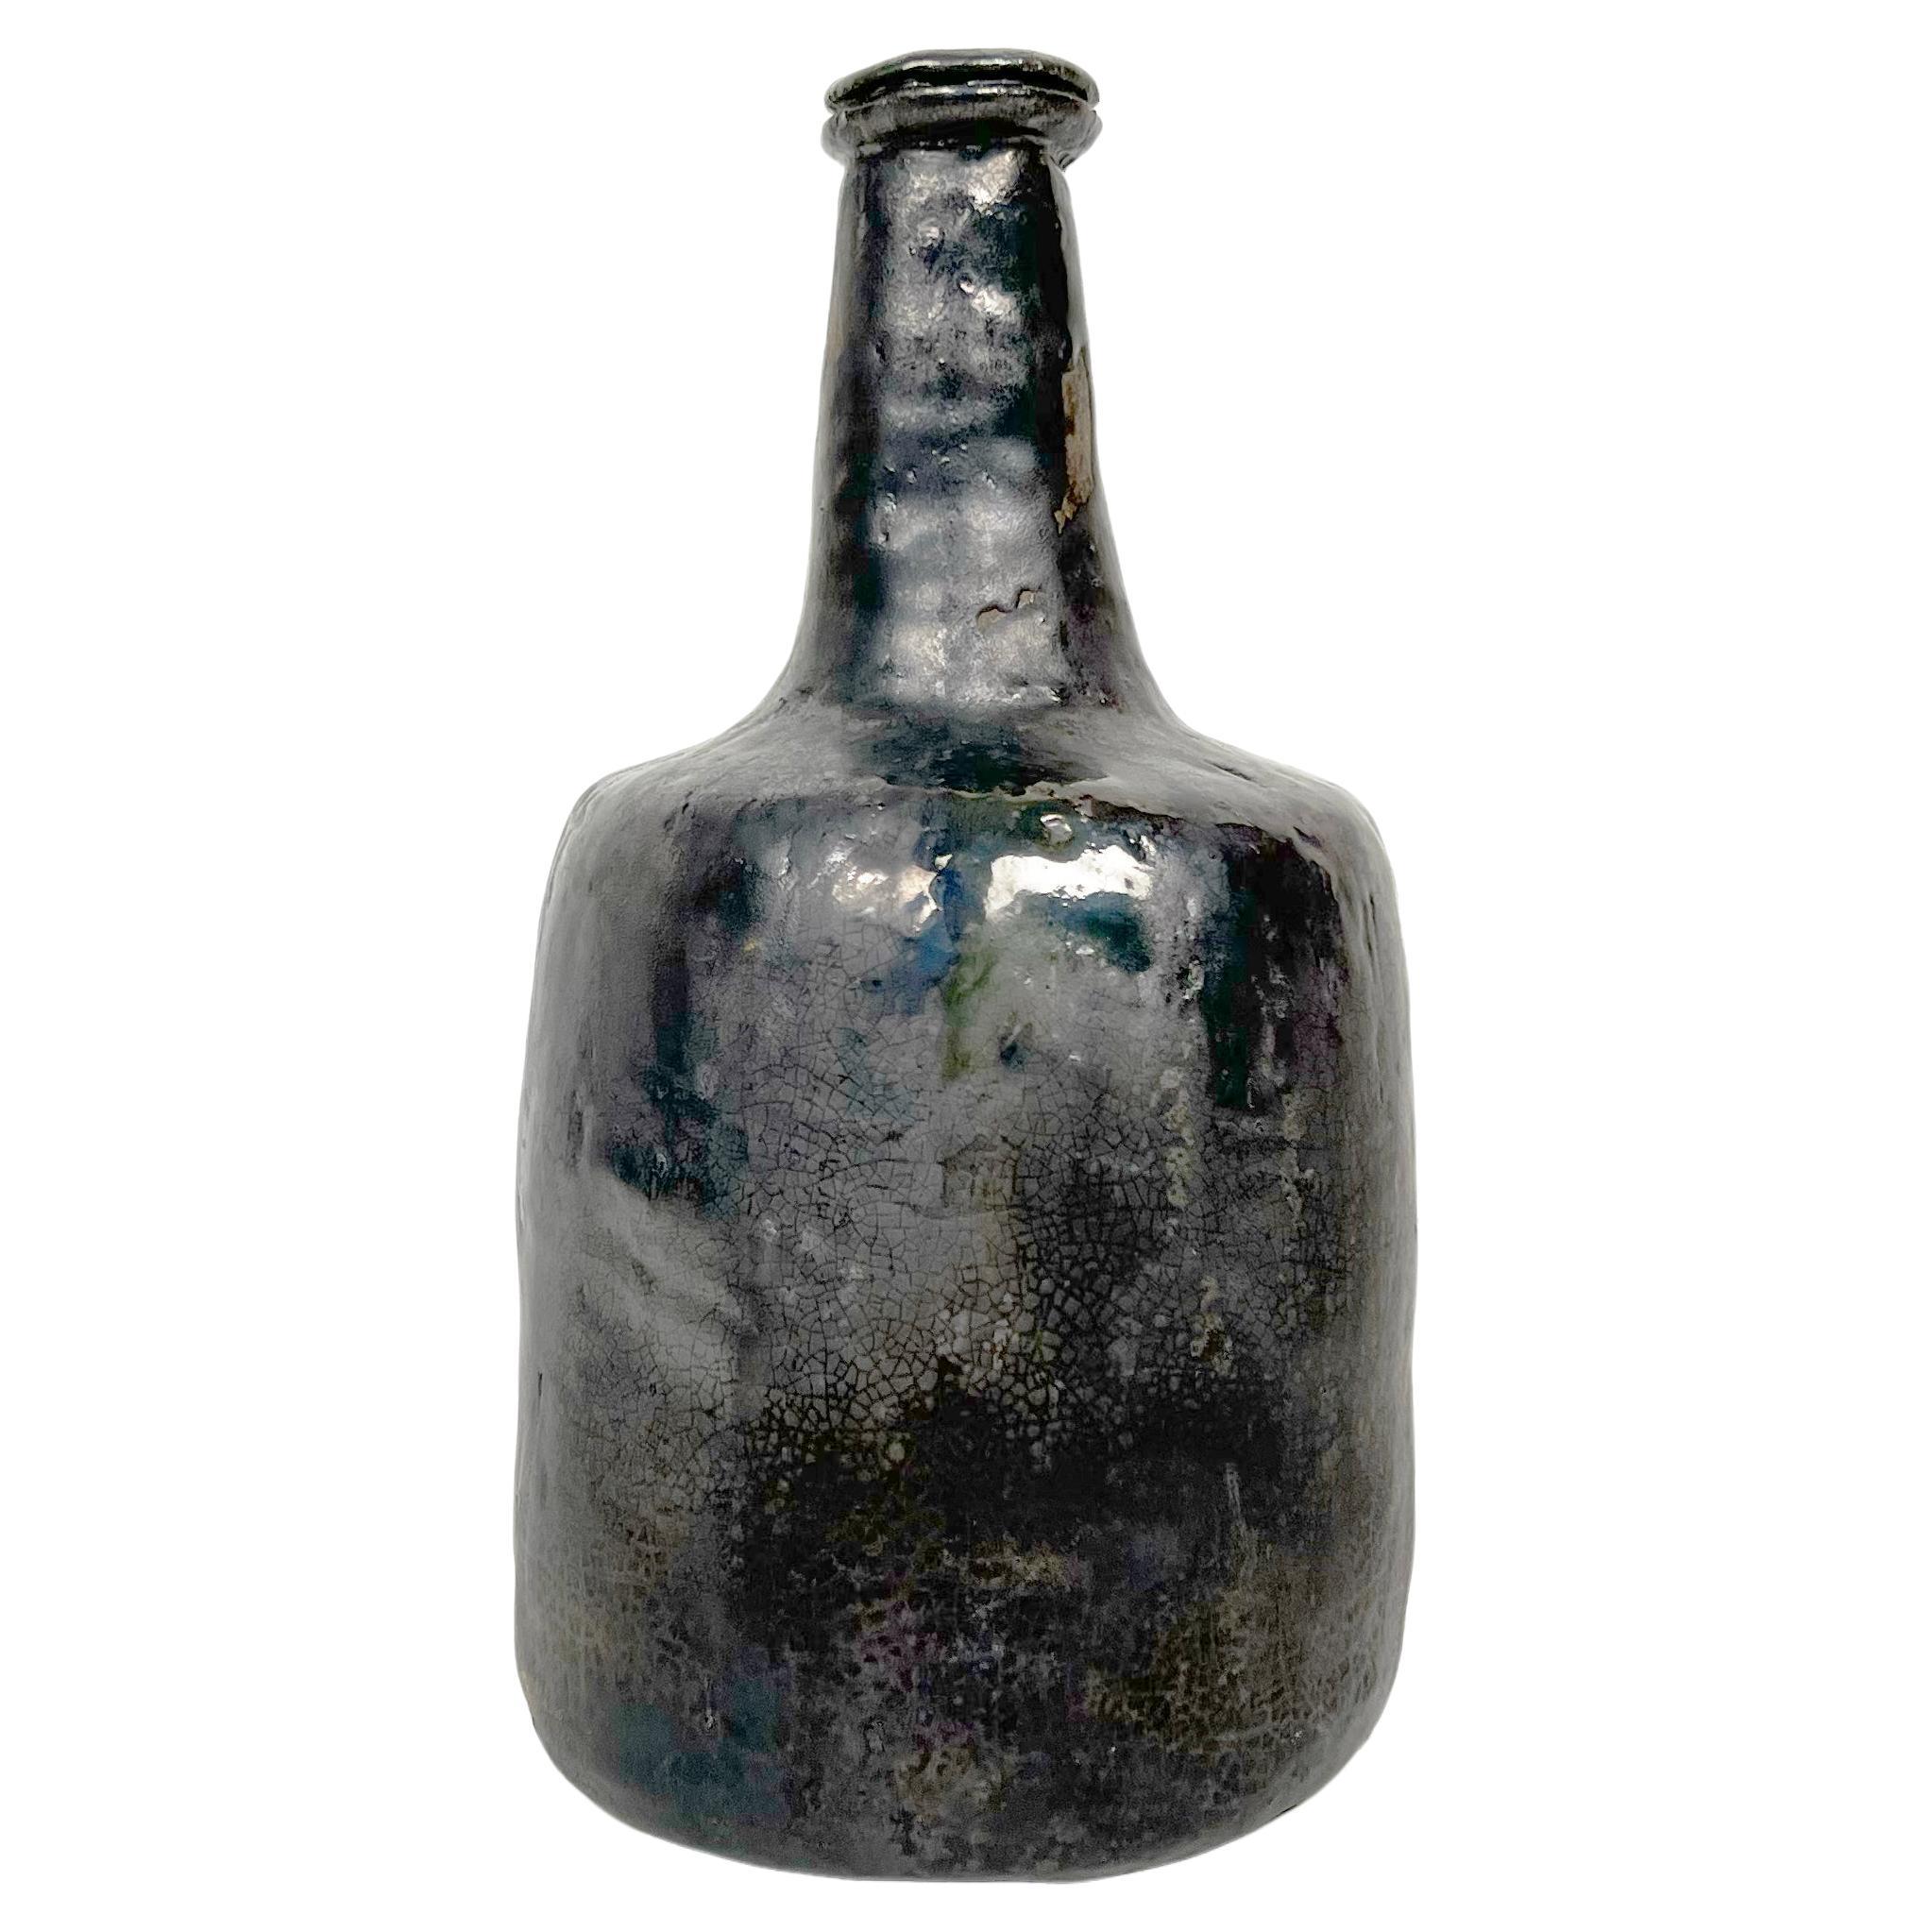 Vintage Hand Made Crude Ceramic Bottle Vase